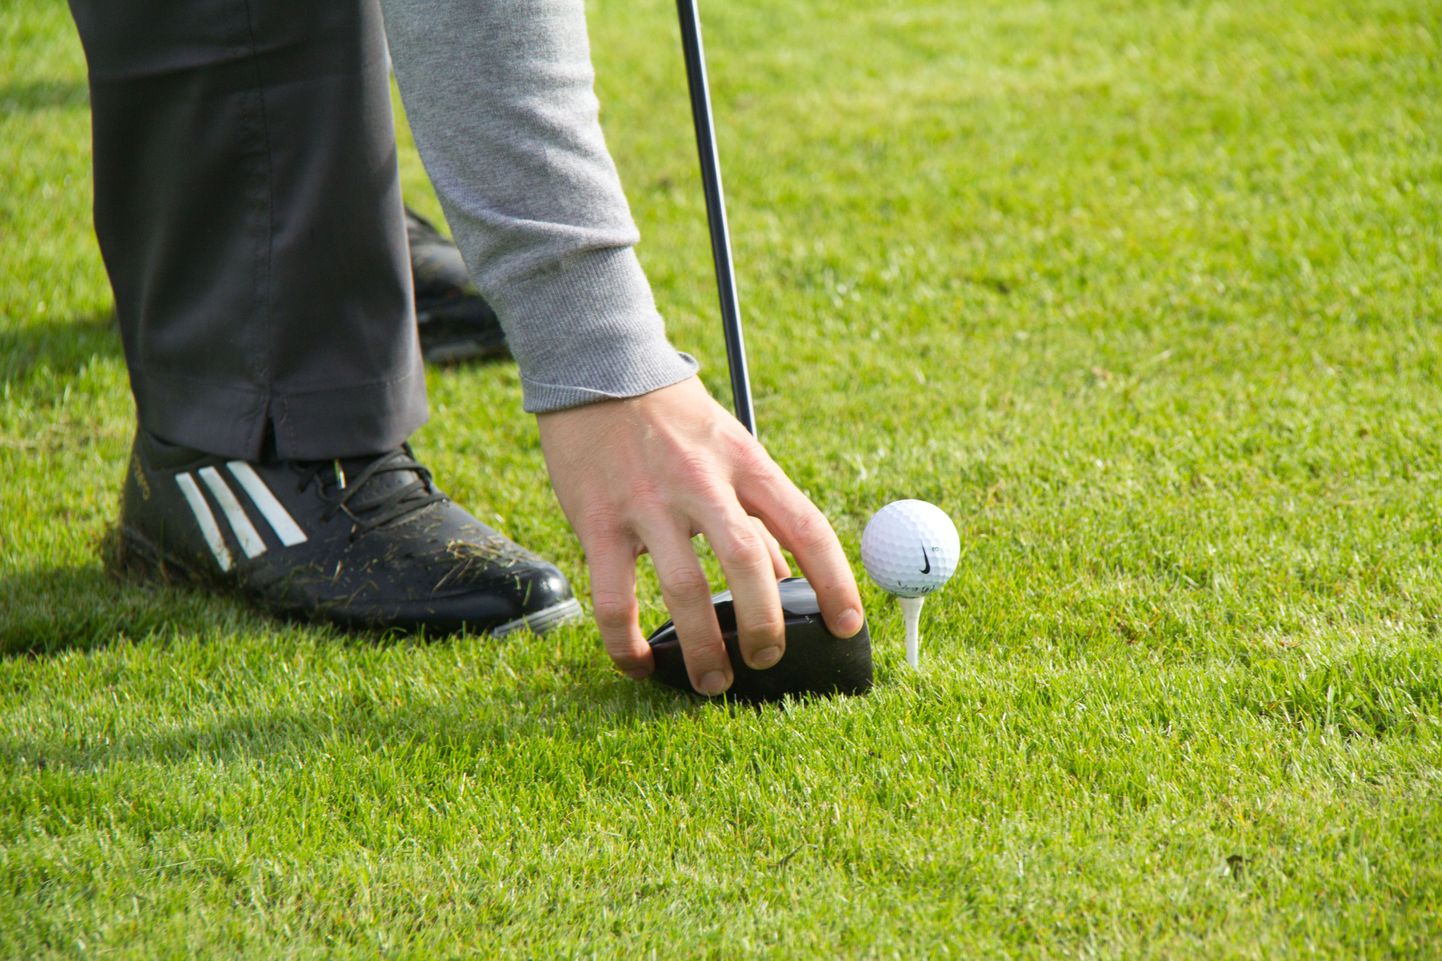 Pühapäeval saab Ojasaare golfiklubis tasuta golfi mängida. Foto on illustratiivne.